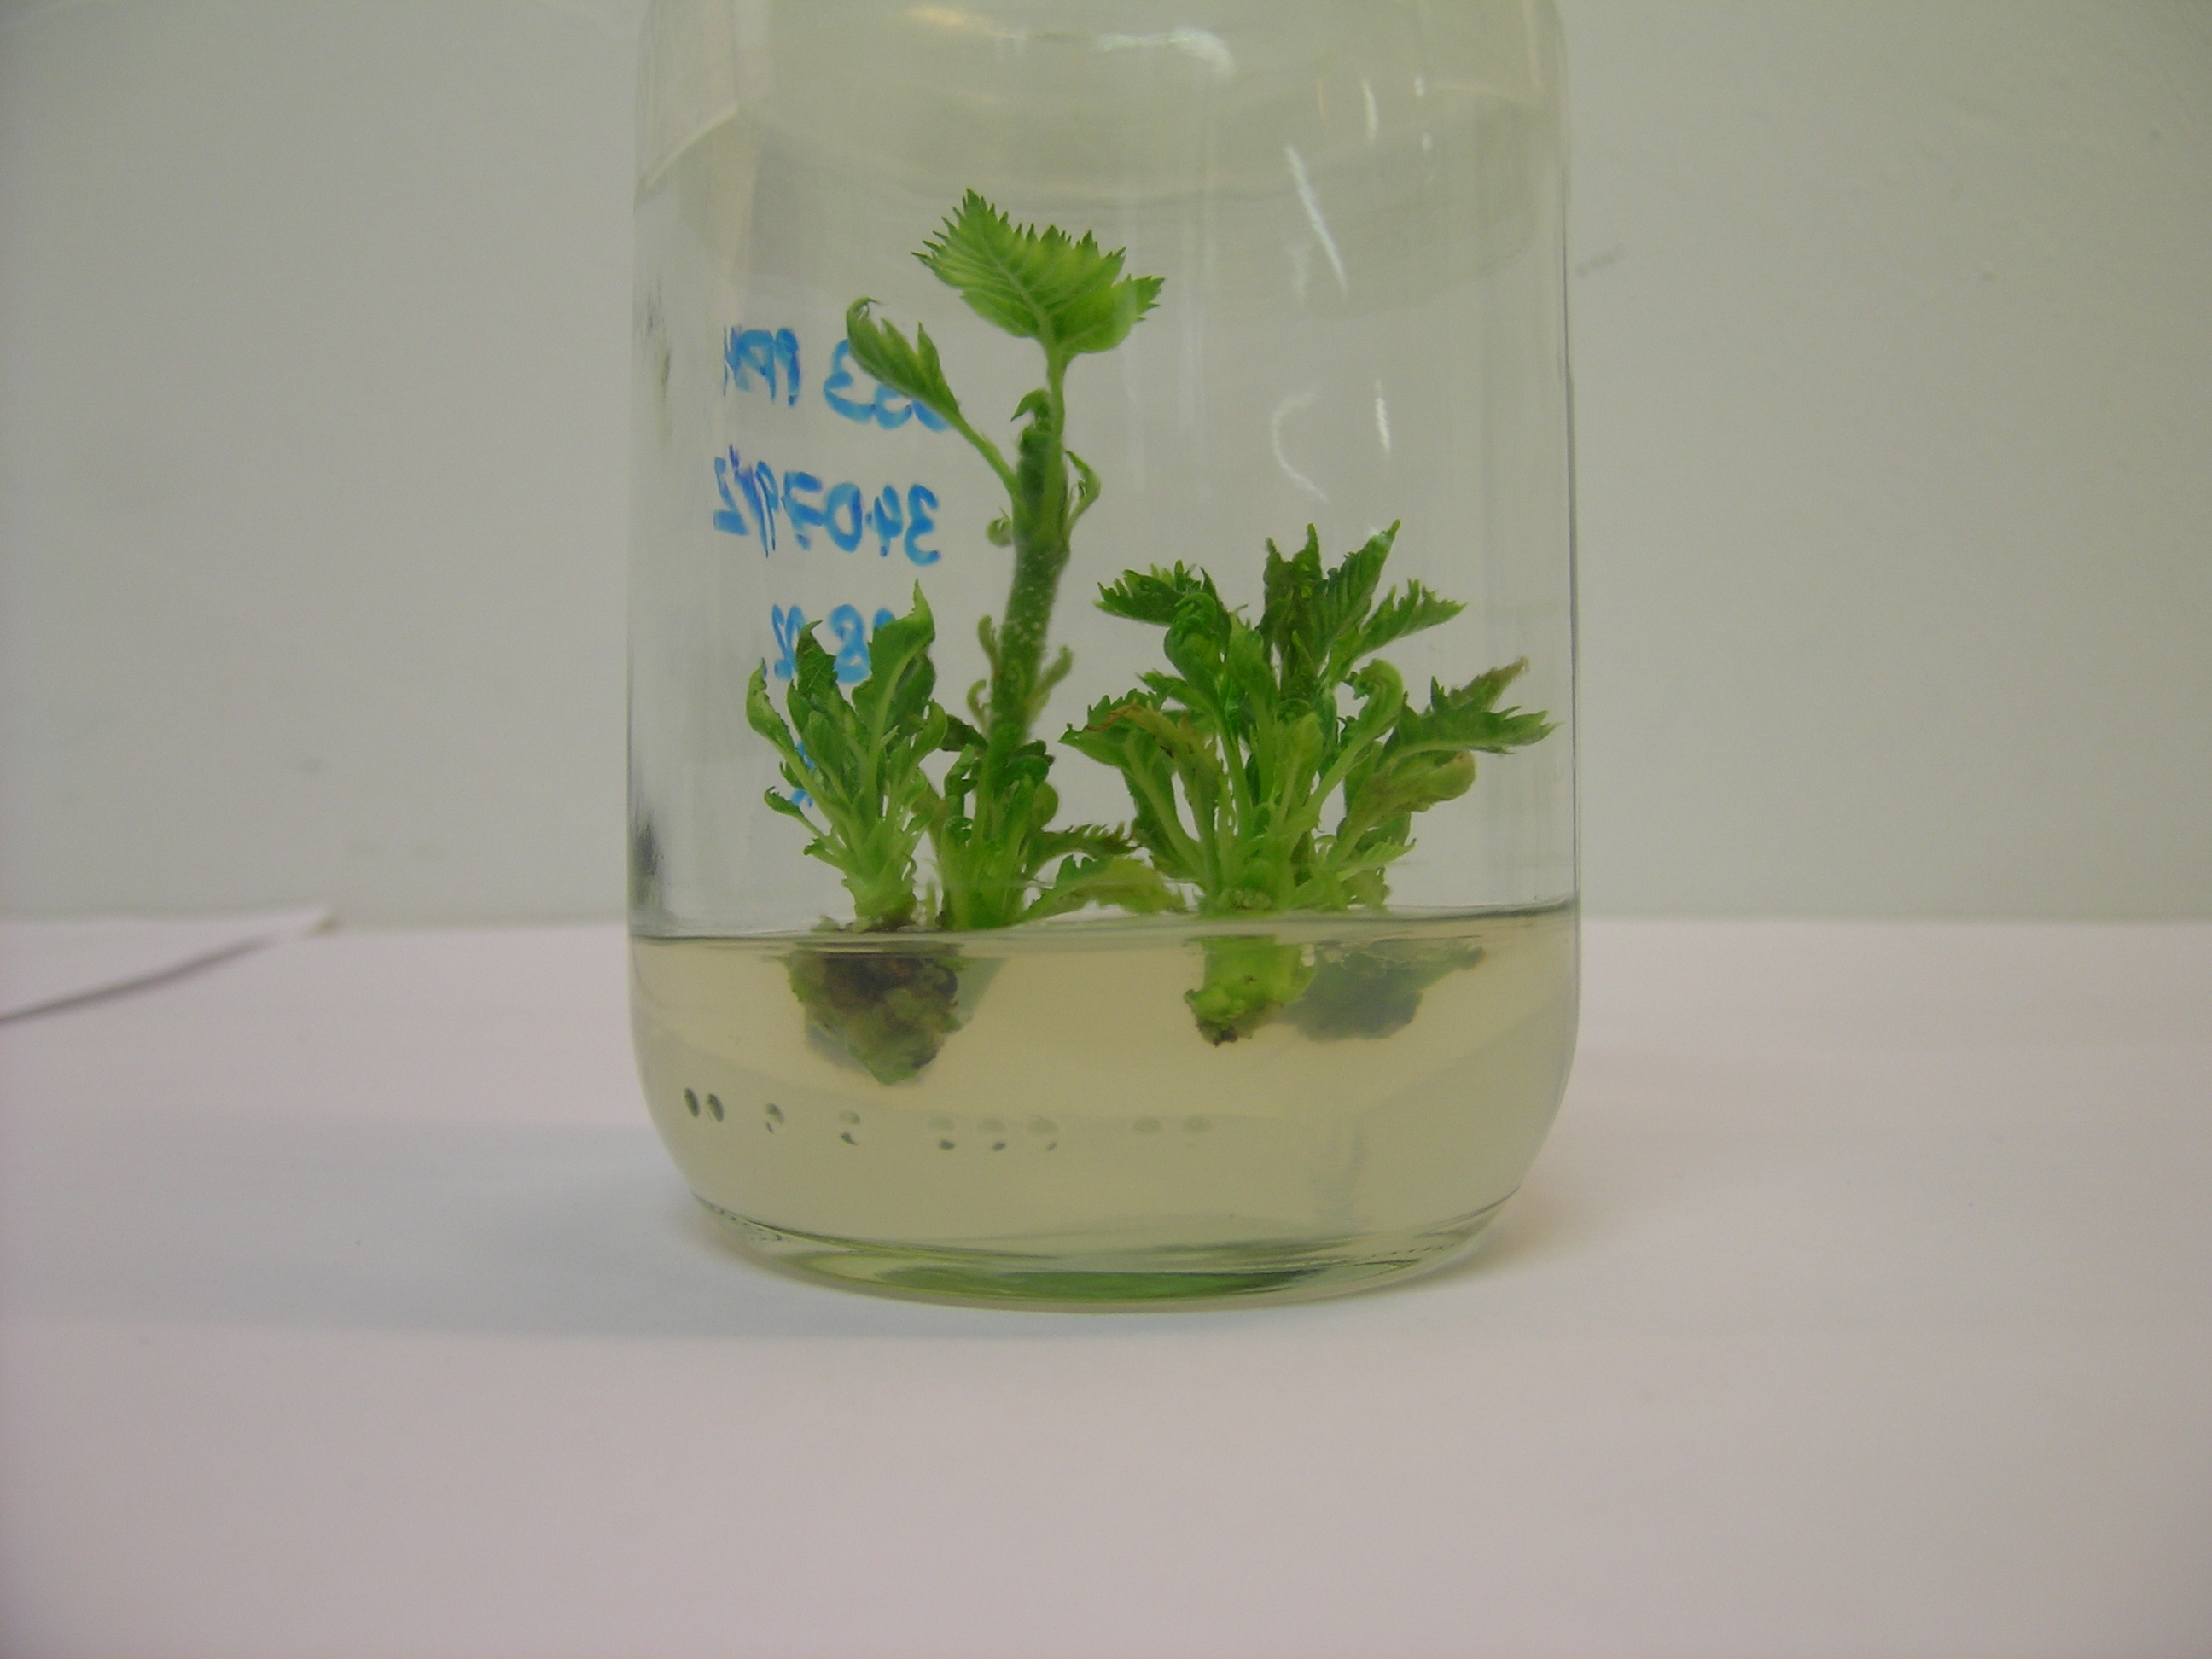 Reagenzglas mit Mikrostecklingen. Das Bild zeigt ein Reagenzglas mit einem geliertem Nährboden. Im Nährboden wachsen kräftig entwickelte, grüne Mikrosprosse.